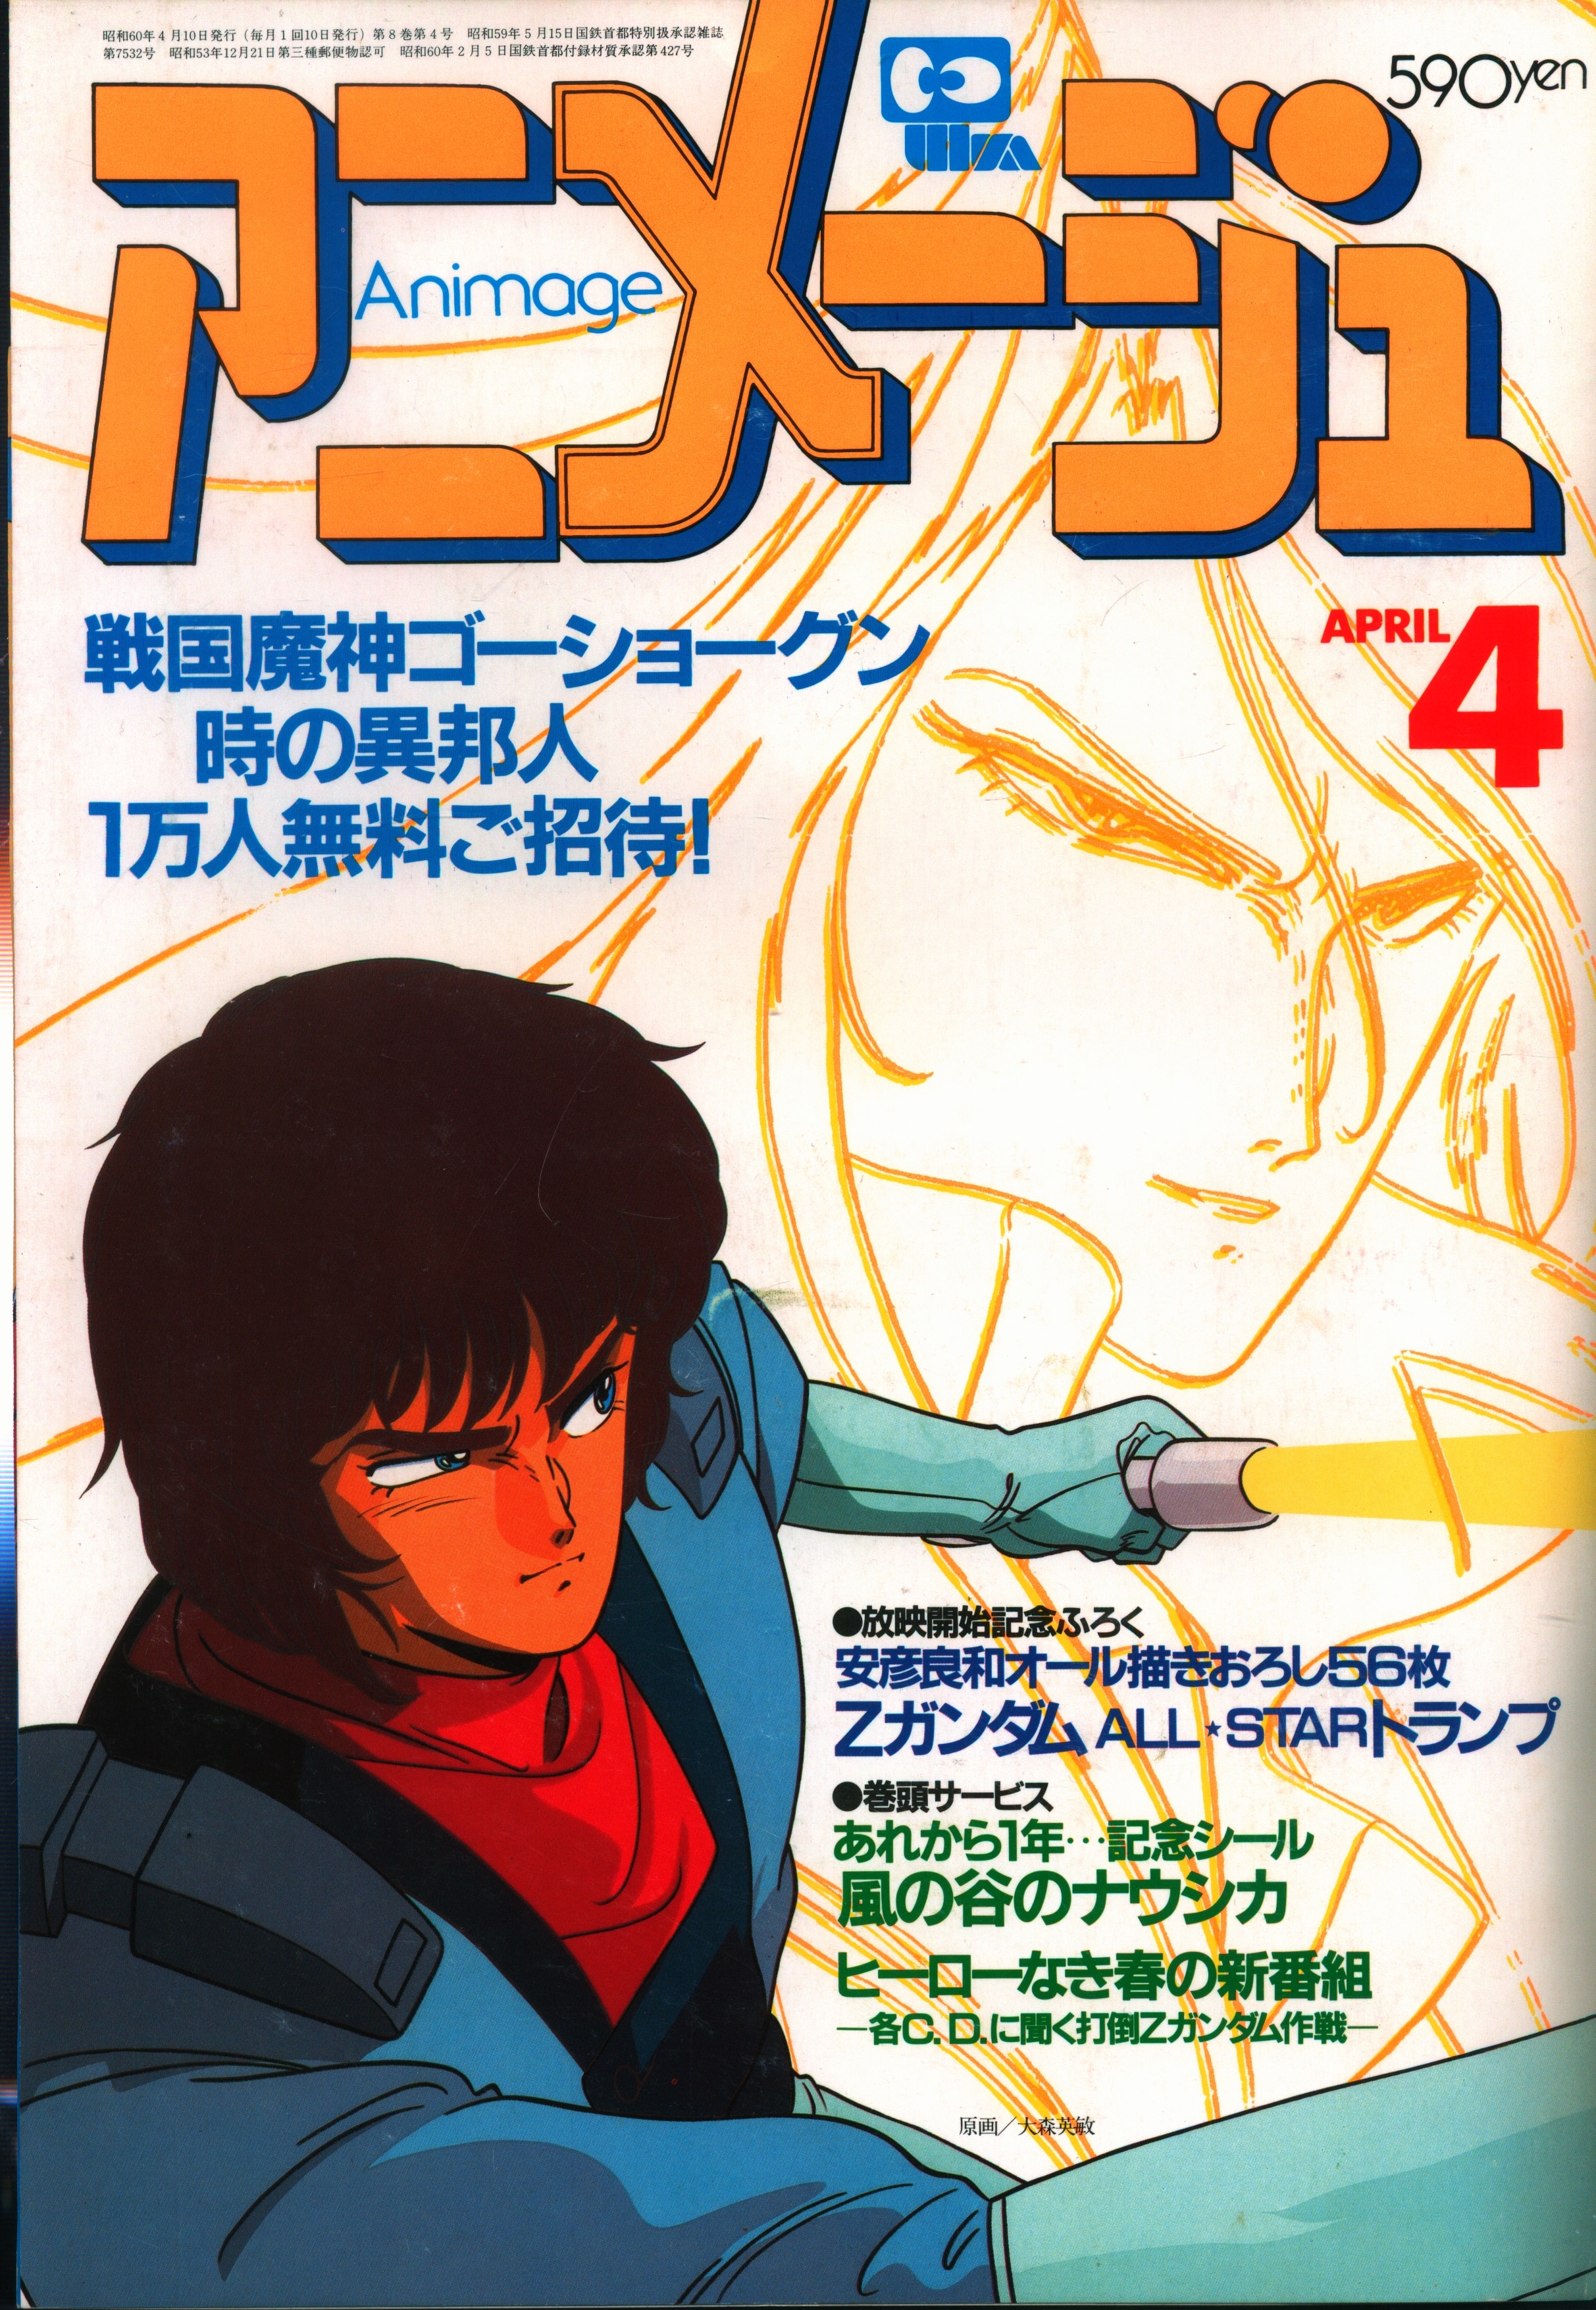 徳間書店 1985年(昭和60年)のアニメ雑誌 付録つき アニメージュ1985年 ...